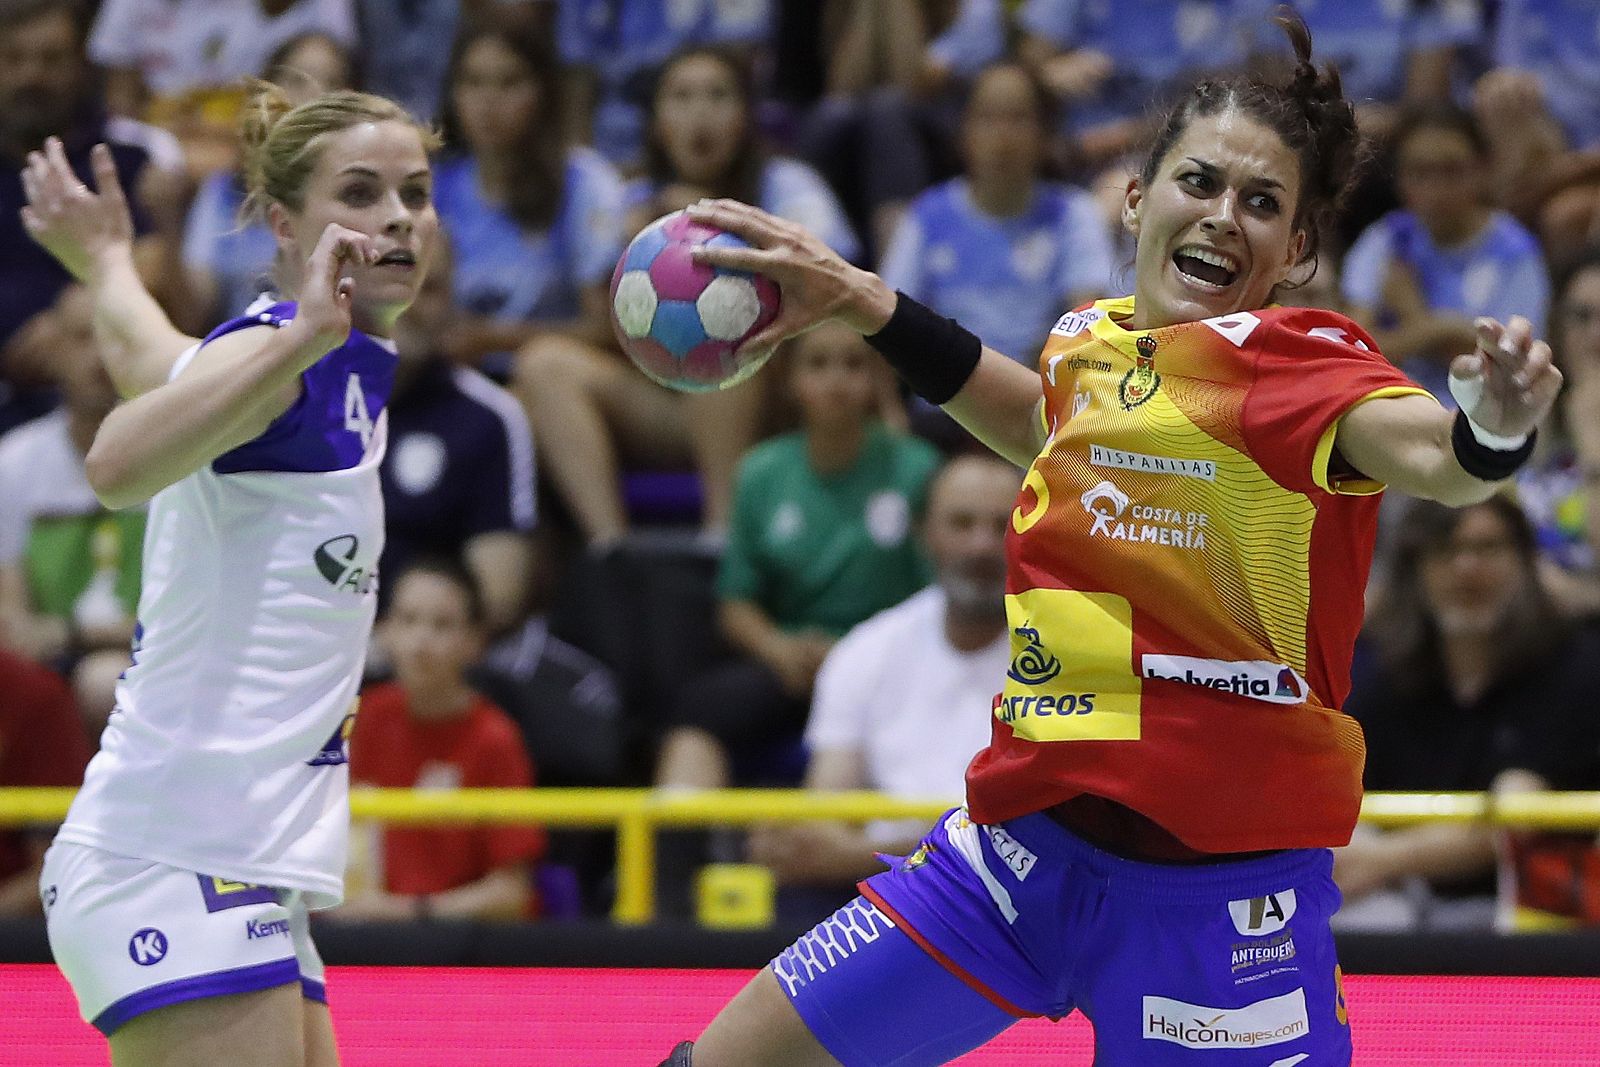 La pivote de la selección española de balonmano María Nuñez (d) se dispone a lanzar ante Thórey Rósa, de Islandia, durante el partido de ida clasificatorio para el Campeonato del Mundo de Balonmano Japón 2019 en Antequera.